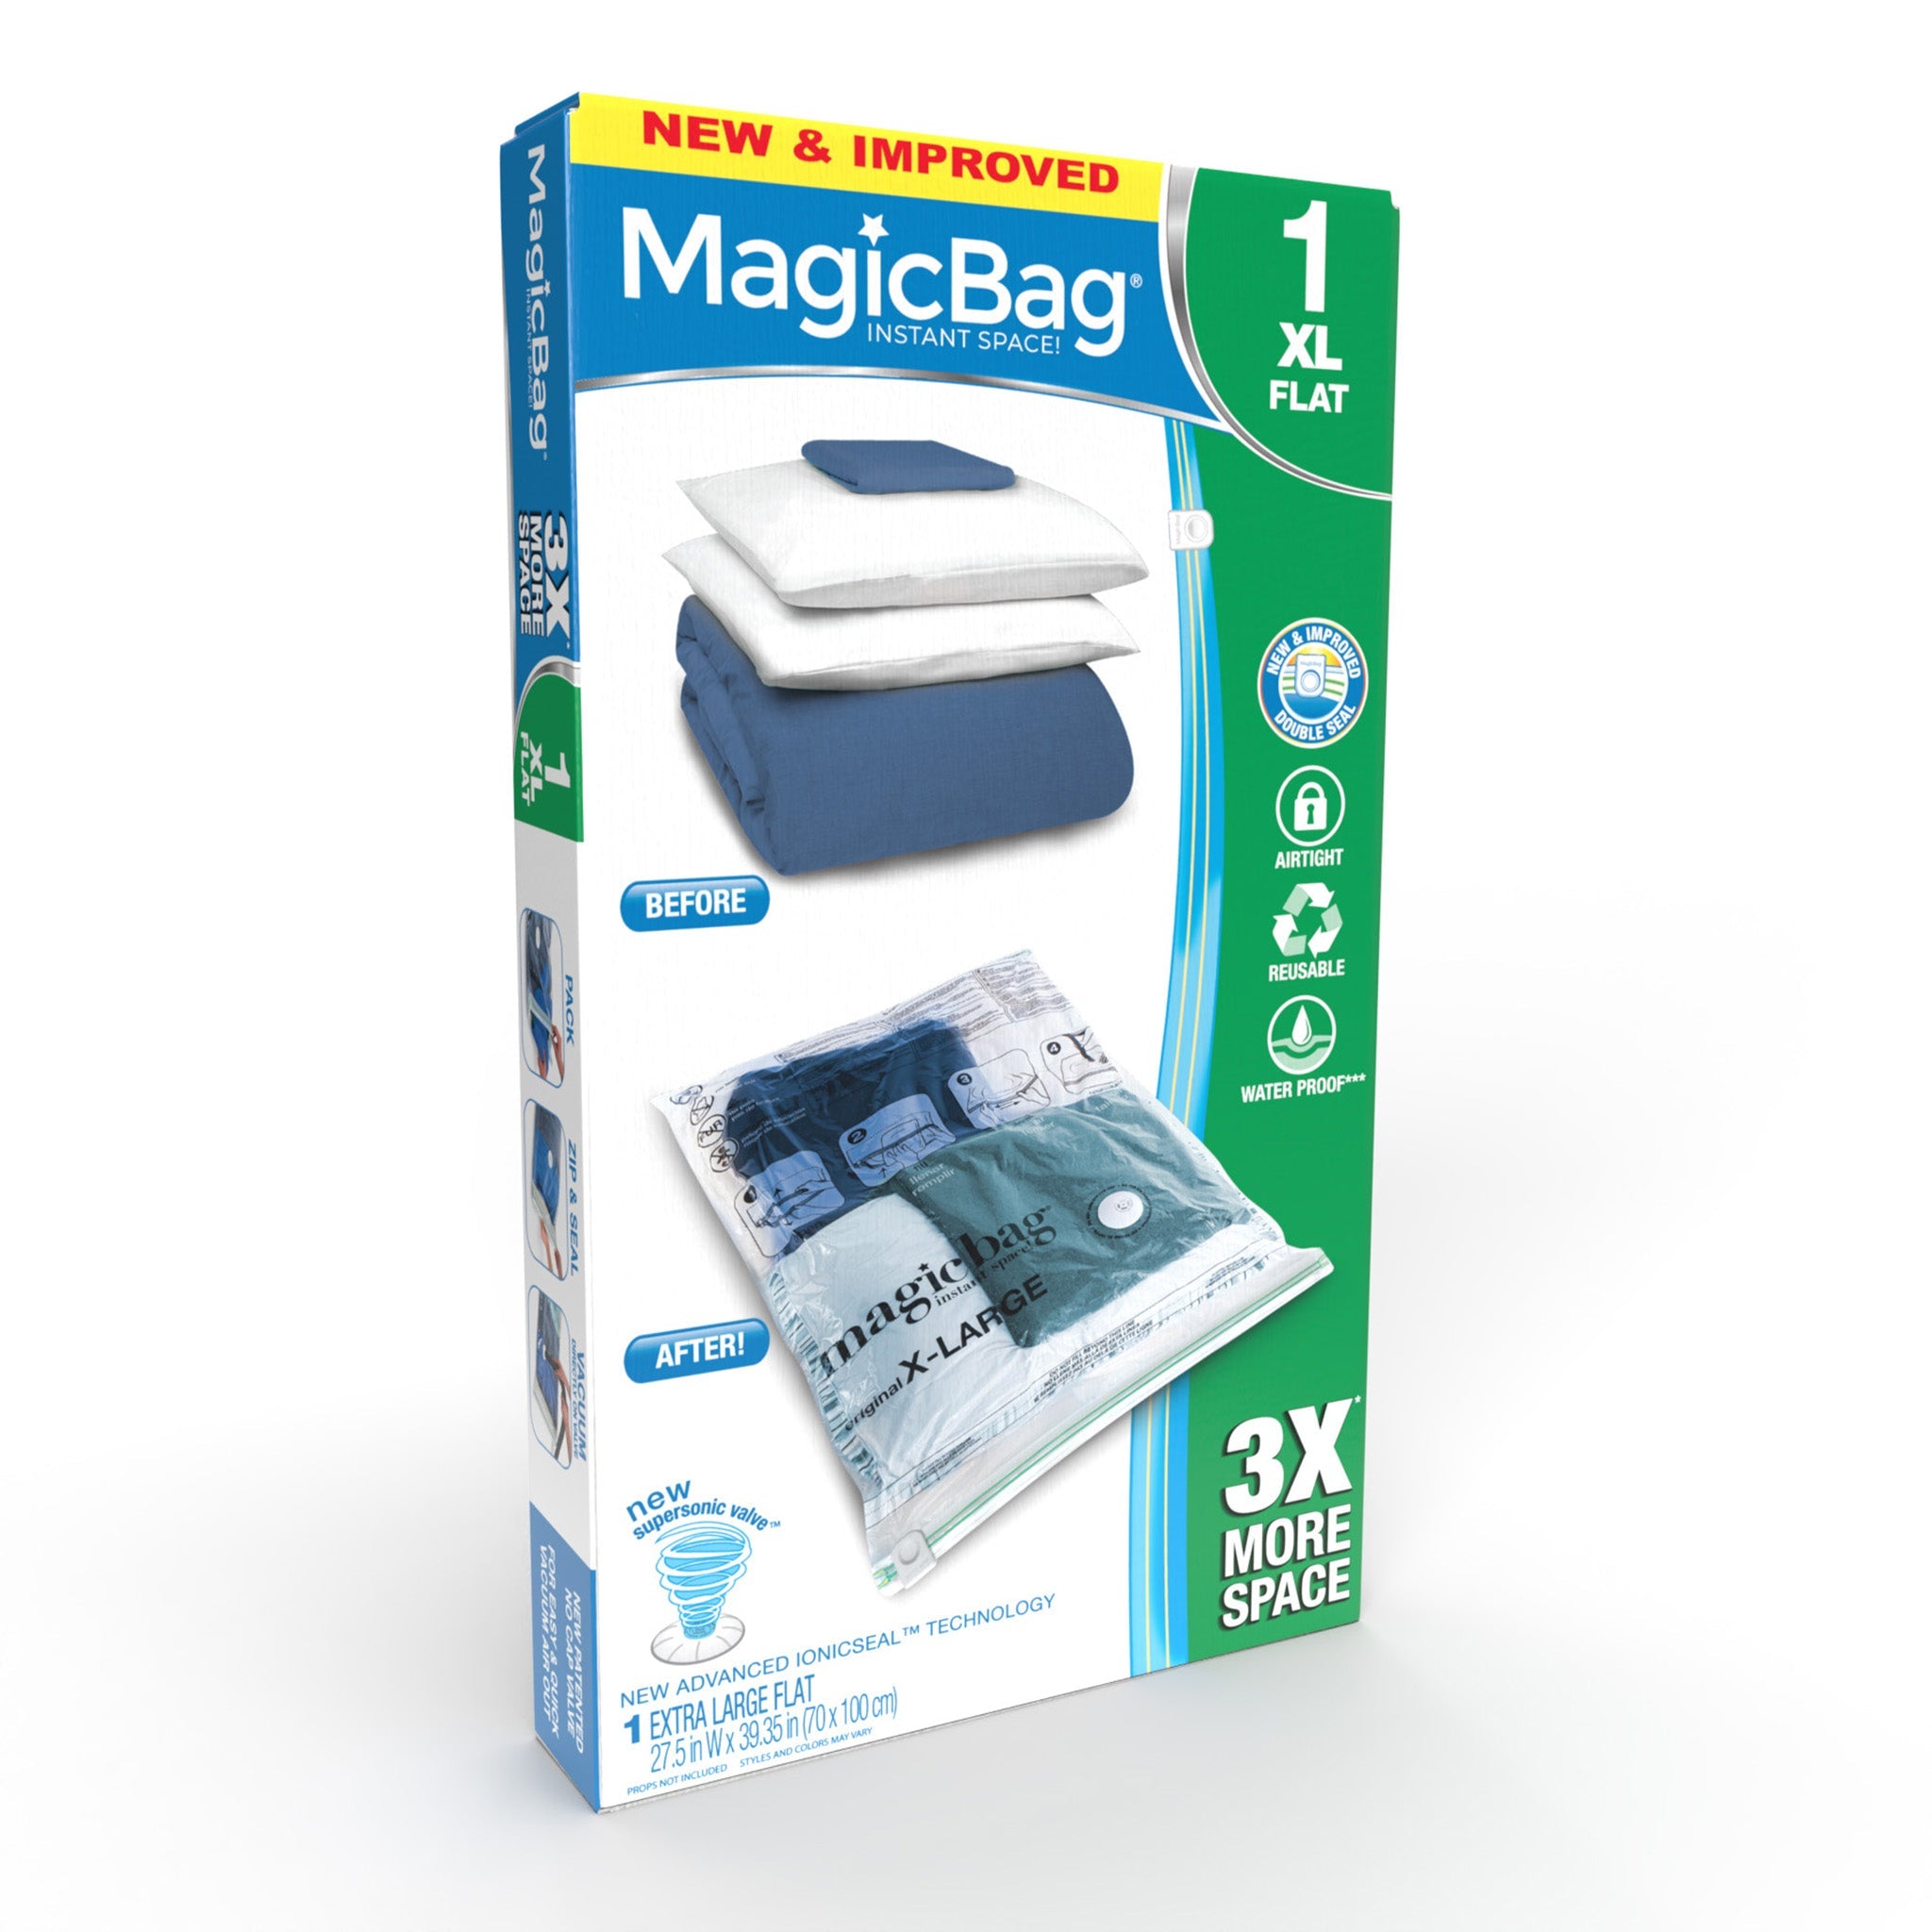 http://www.shopsmartdesign.com/cdn/shop/products/magicbag-instant-space-saver-storage-flat-extra-large-smart-design-magicbag-5732412-200-incrementing-number-504063.jpg?v=1679340604